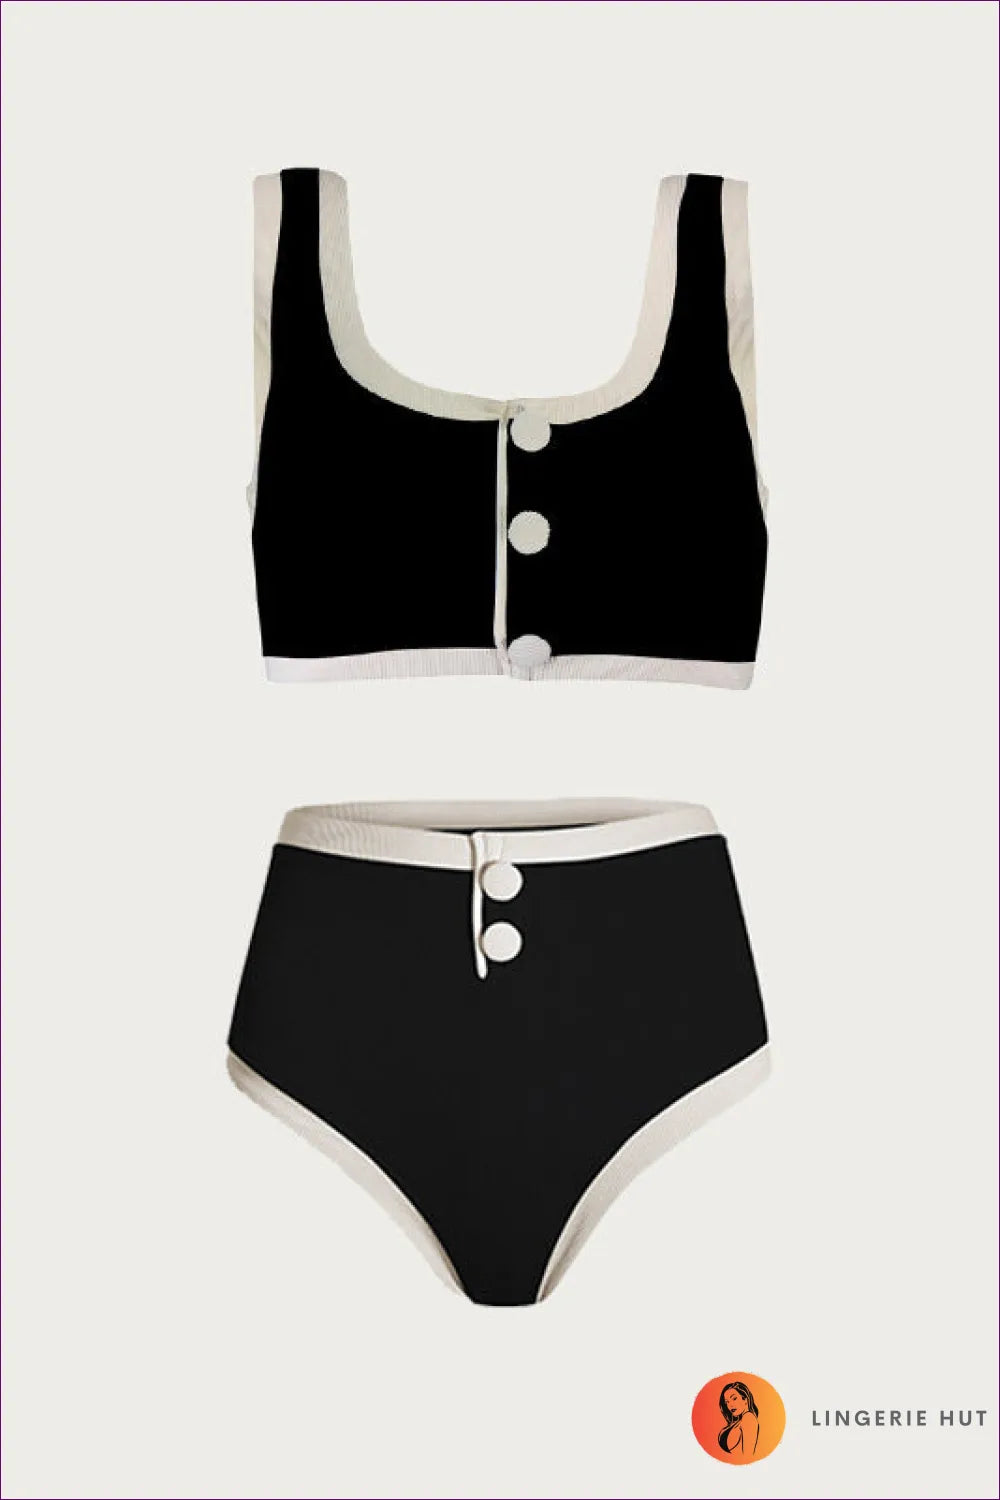 Classic Black & White Split Swimsuit - High-grade Boho Chic For x